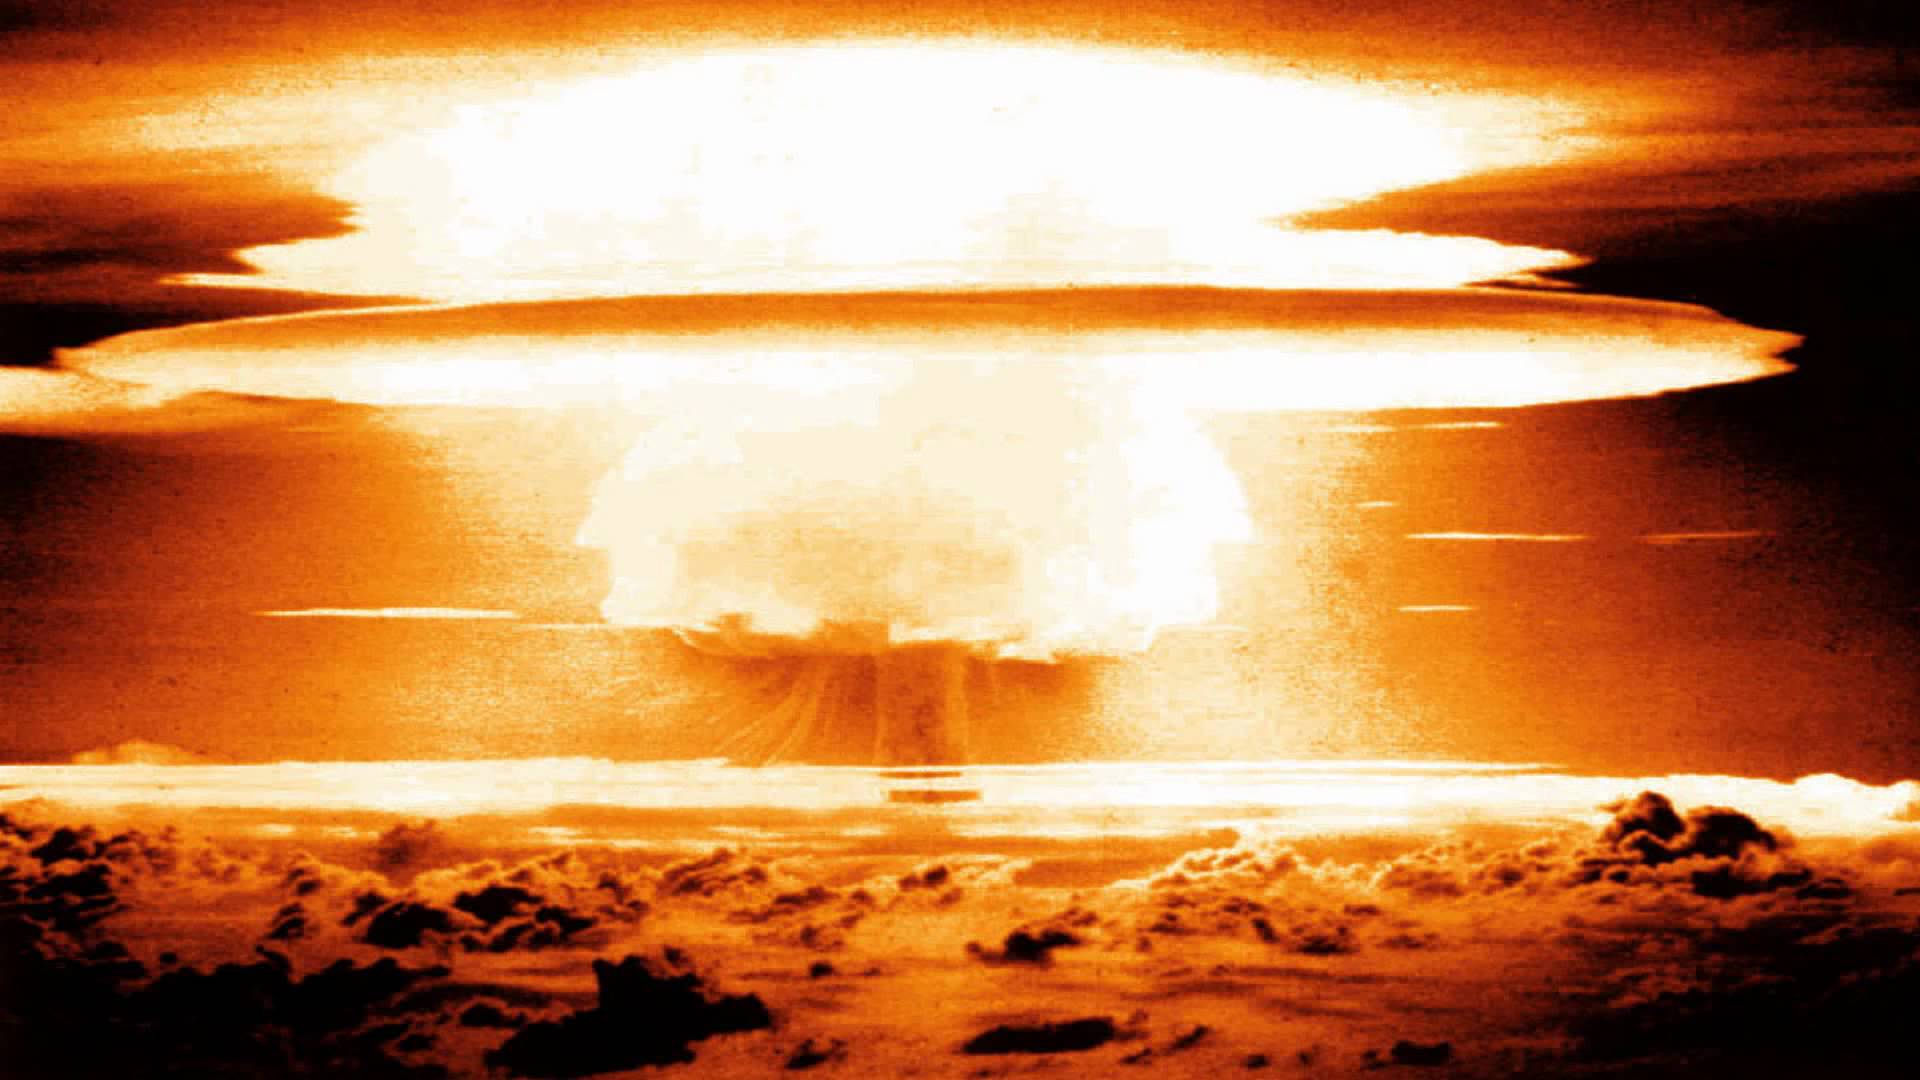 Siêu ngư lôi hạt nhân Nga có thể tạo sóng thần, hủy diệt TP Mỹ? - 3